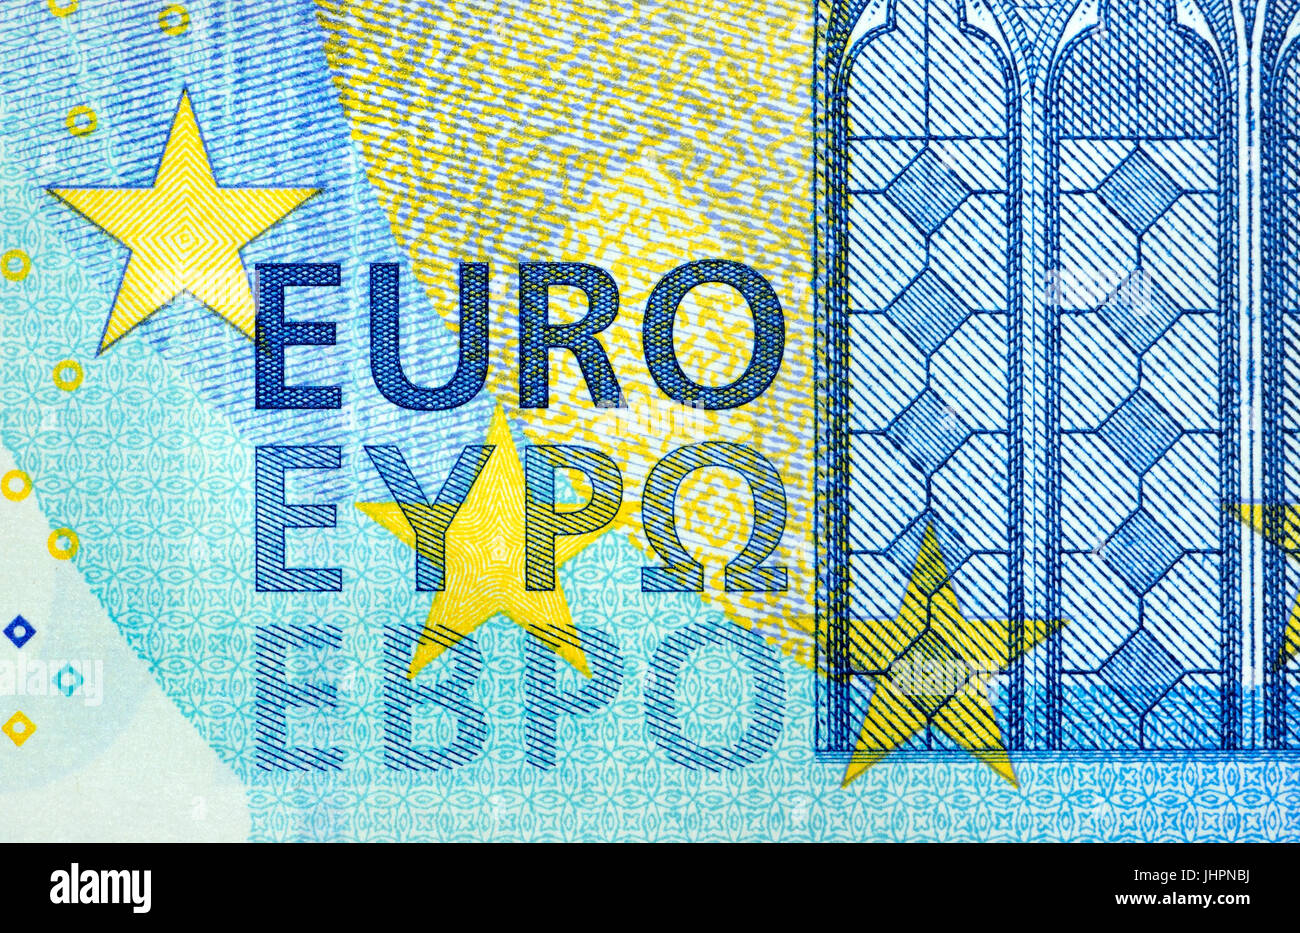 Billete de 20€ detalle mostrando la palabra "euro" en tres alfabetos (latino) - romano, griego y cirílico. Foto de stock